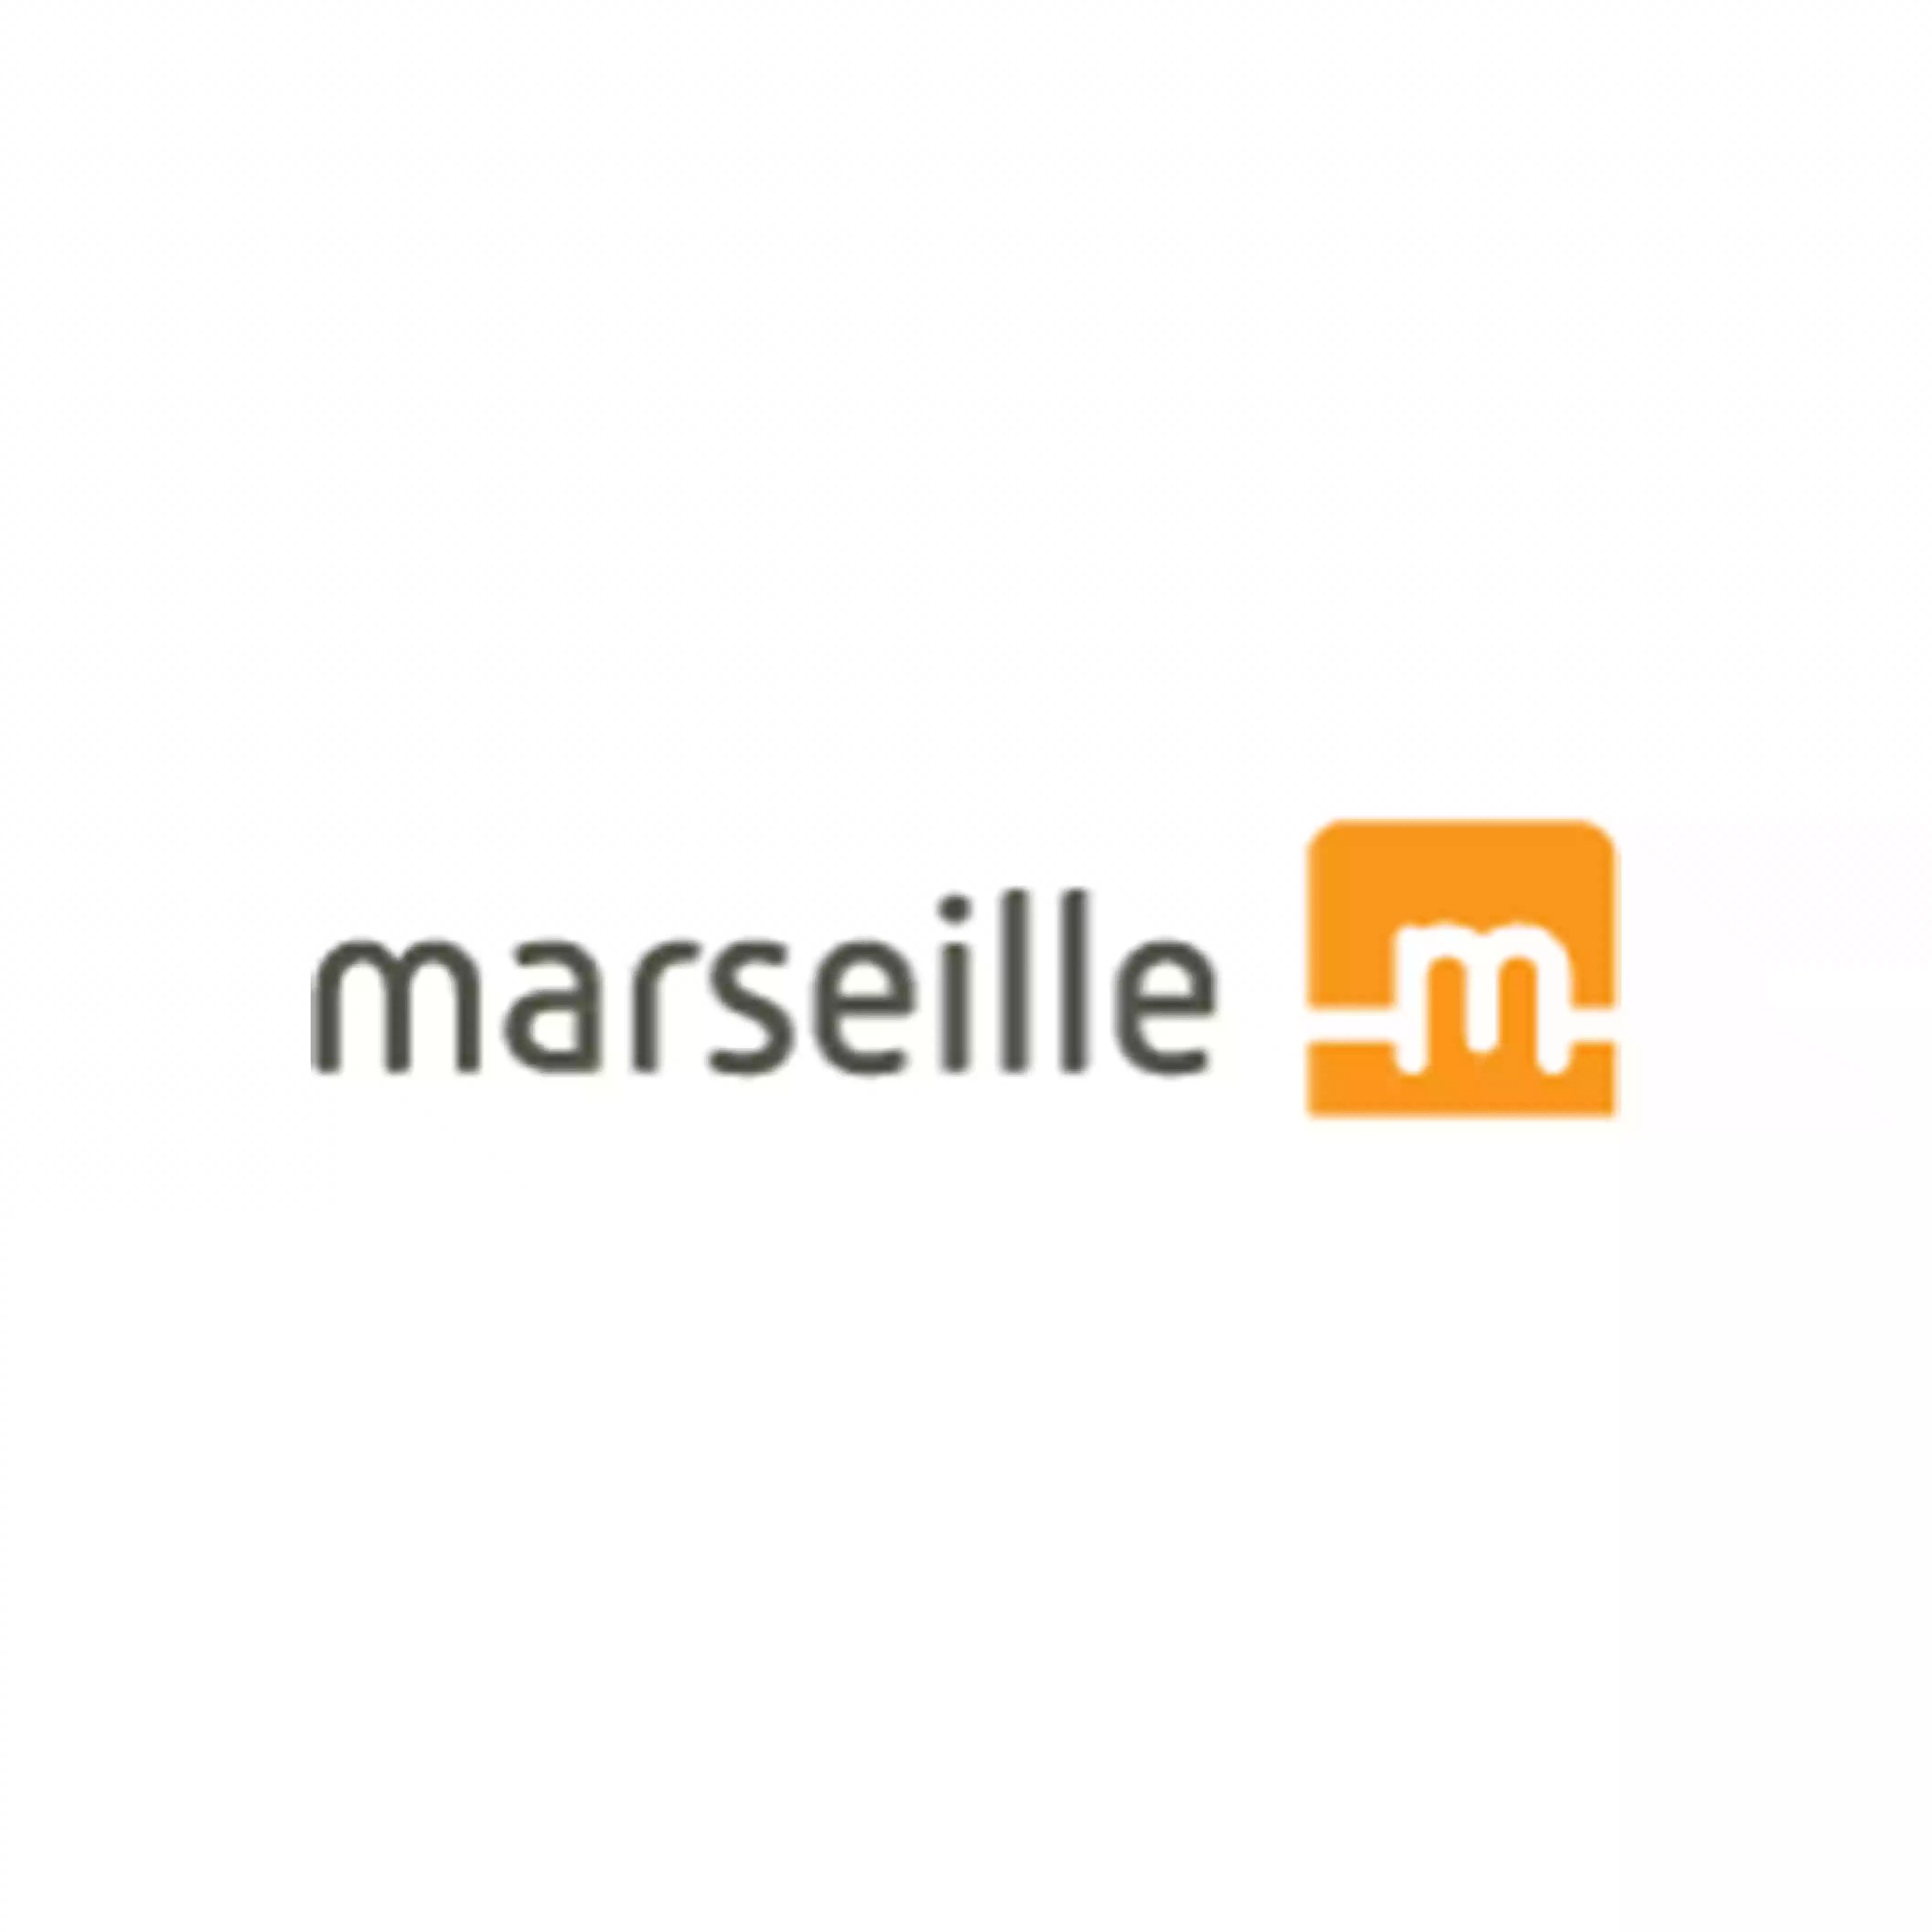 Marseilleinc